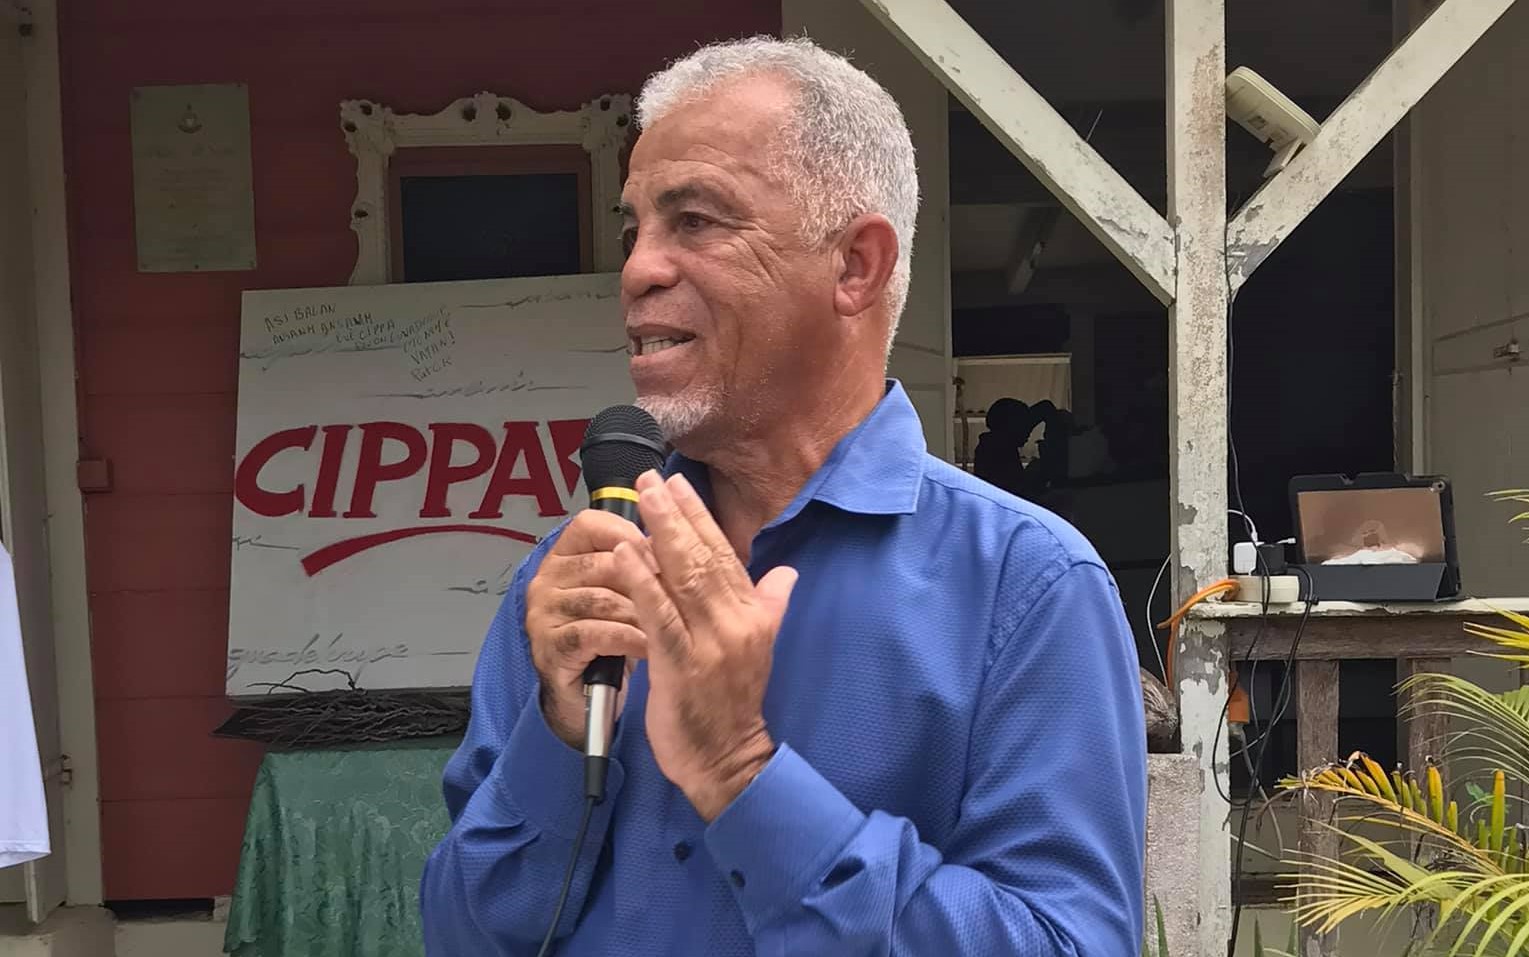     Alain Plaisir, tête de liste du CIPPA aux élections régionales

